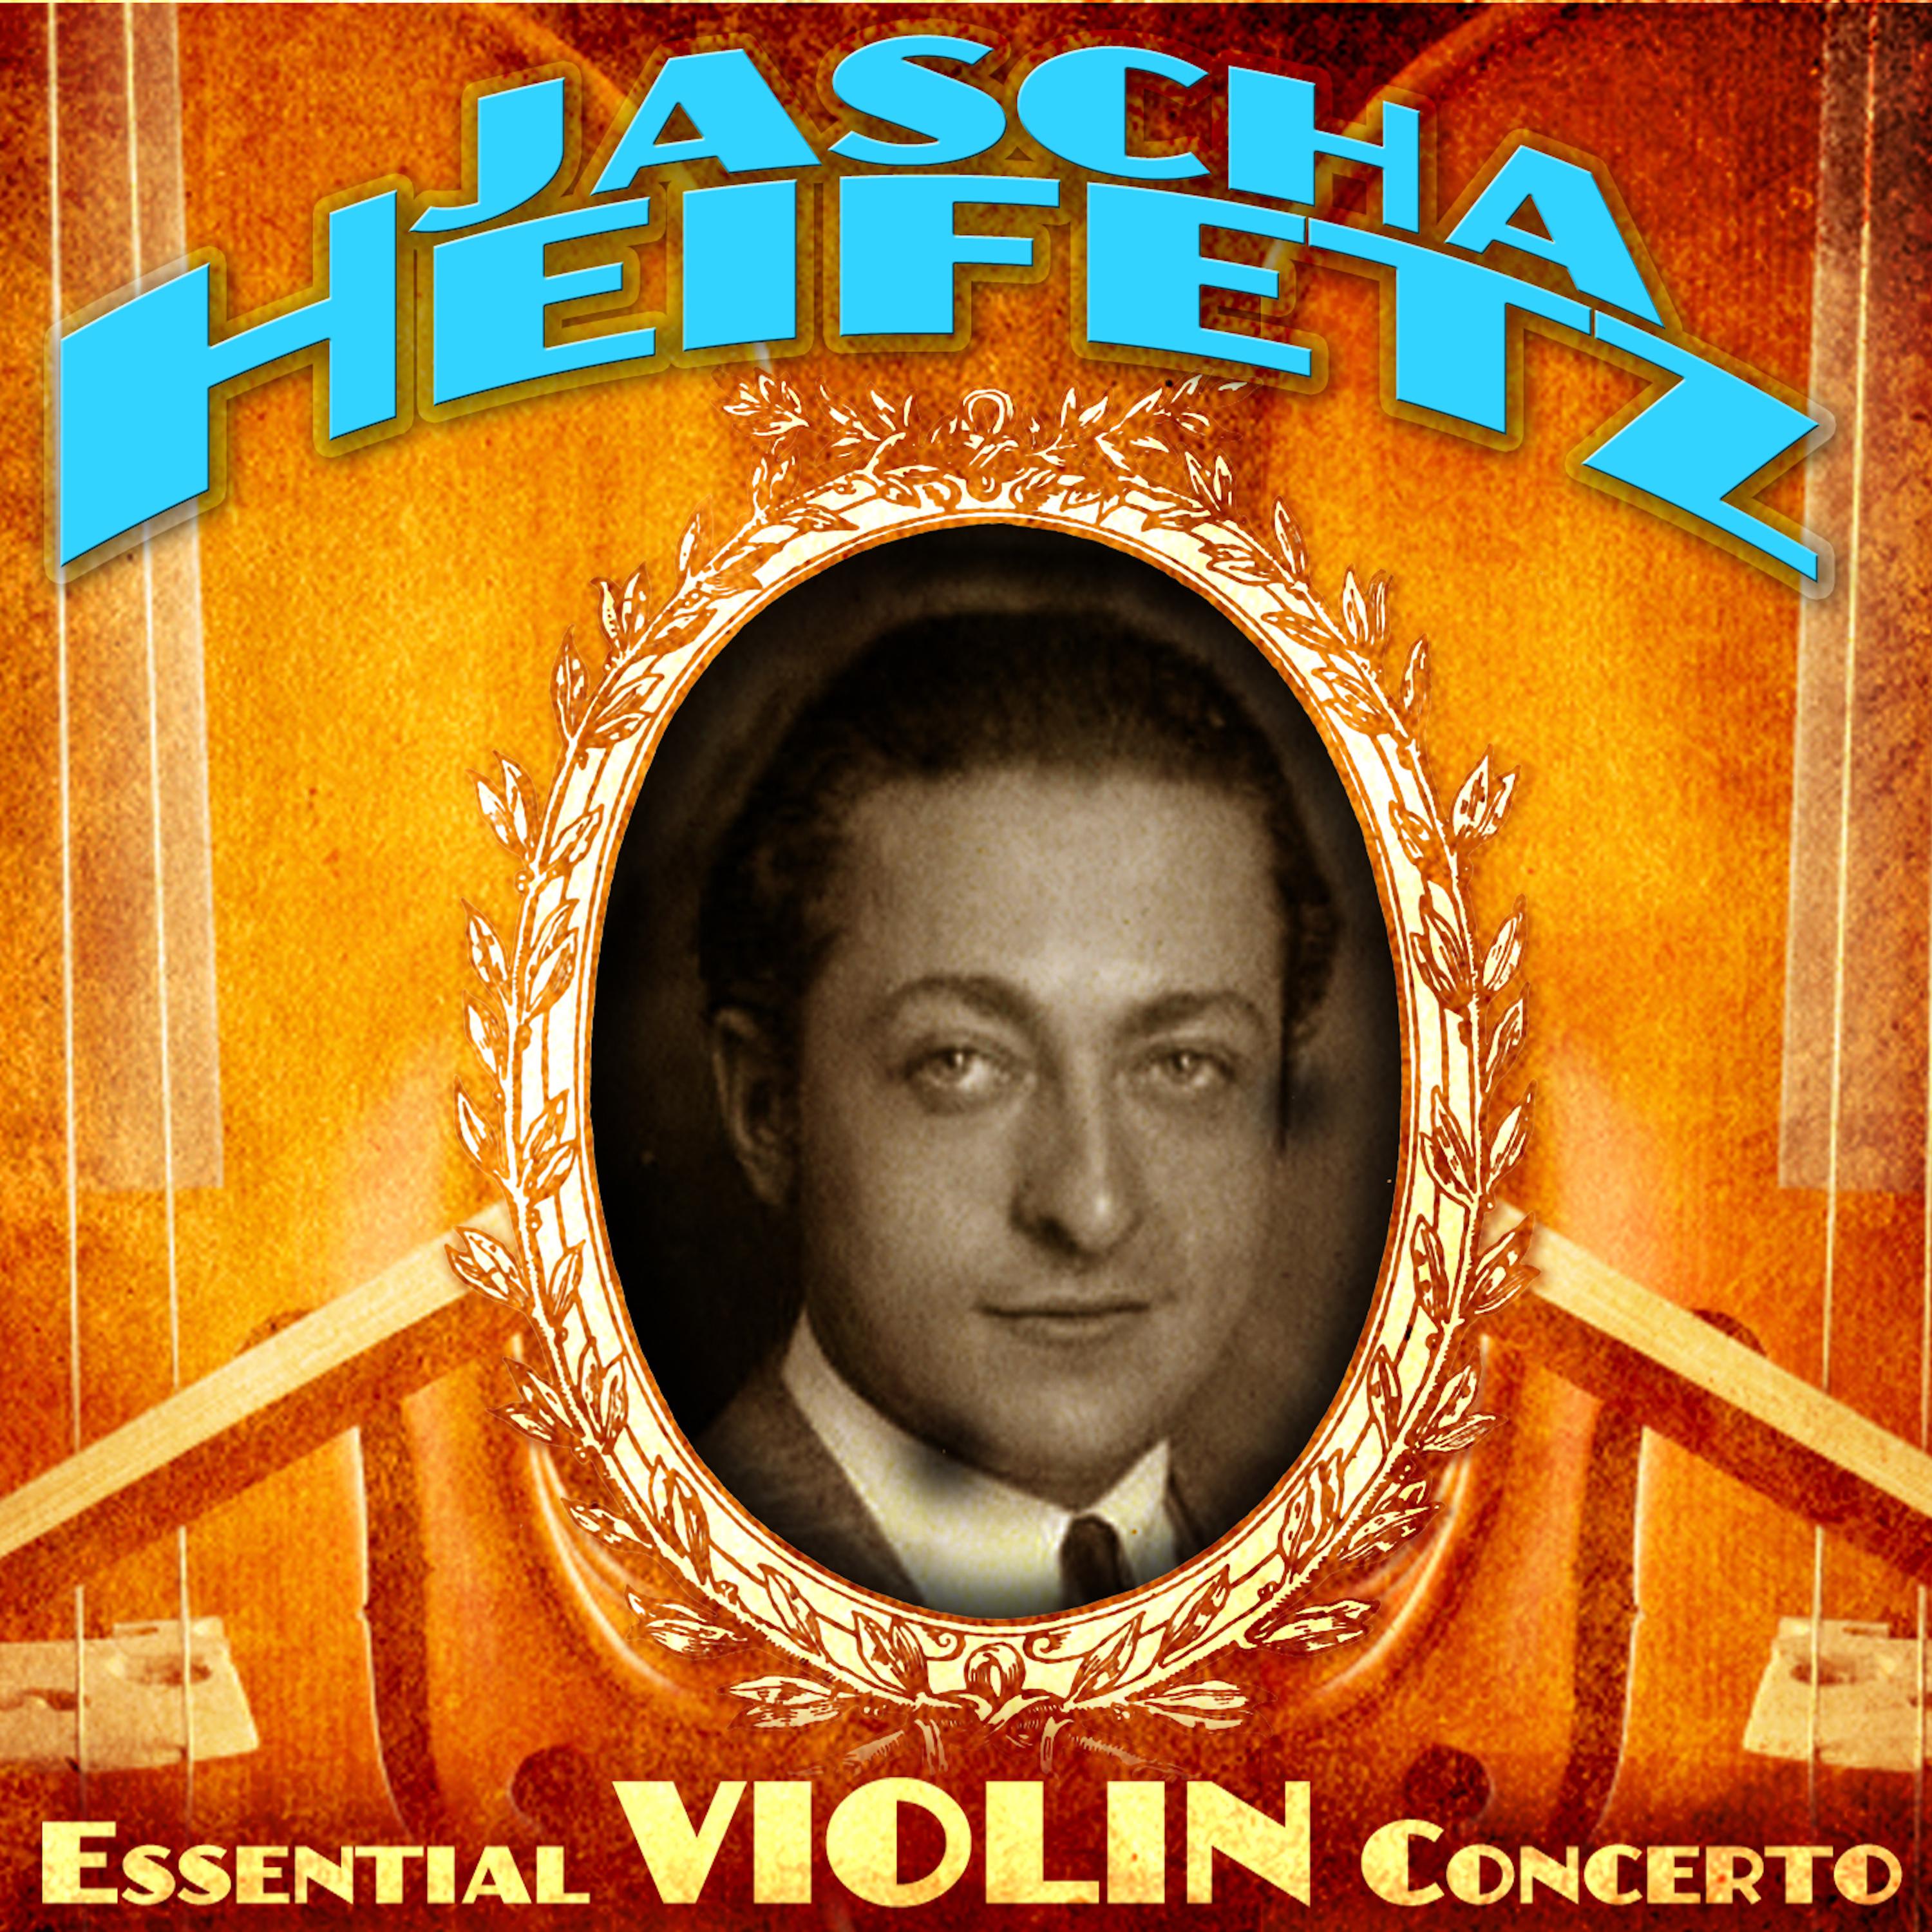 Essential Violin Concerto